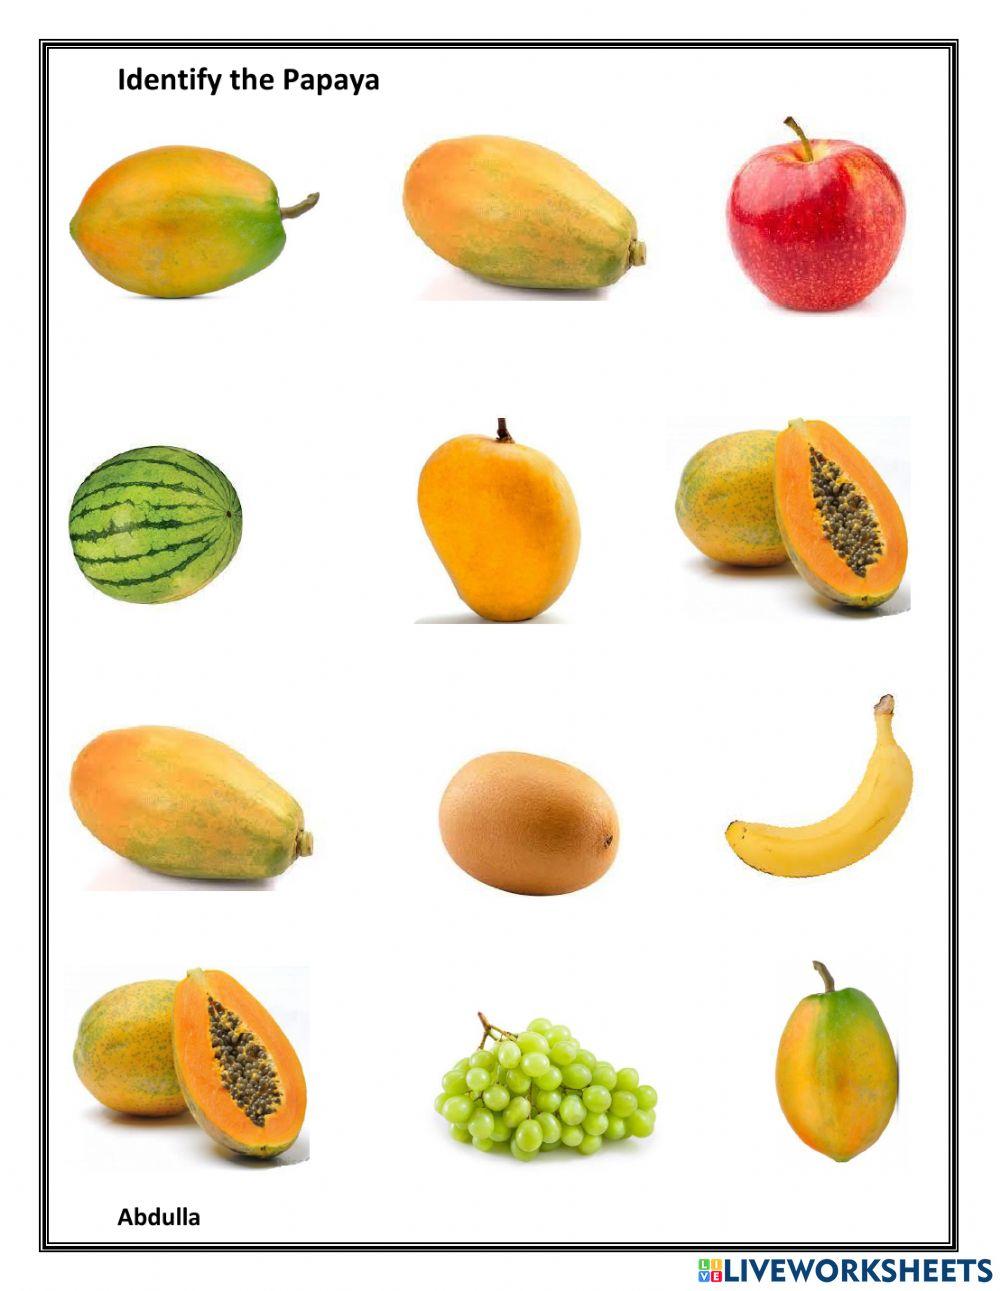 Identify papayas